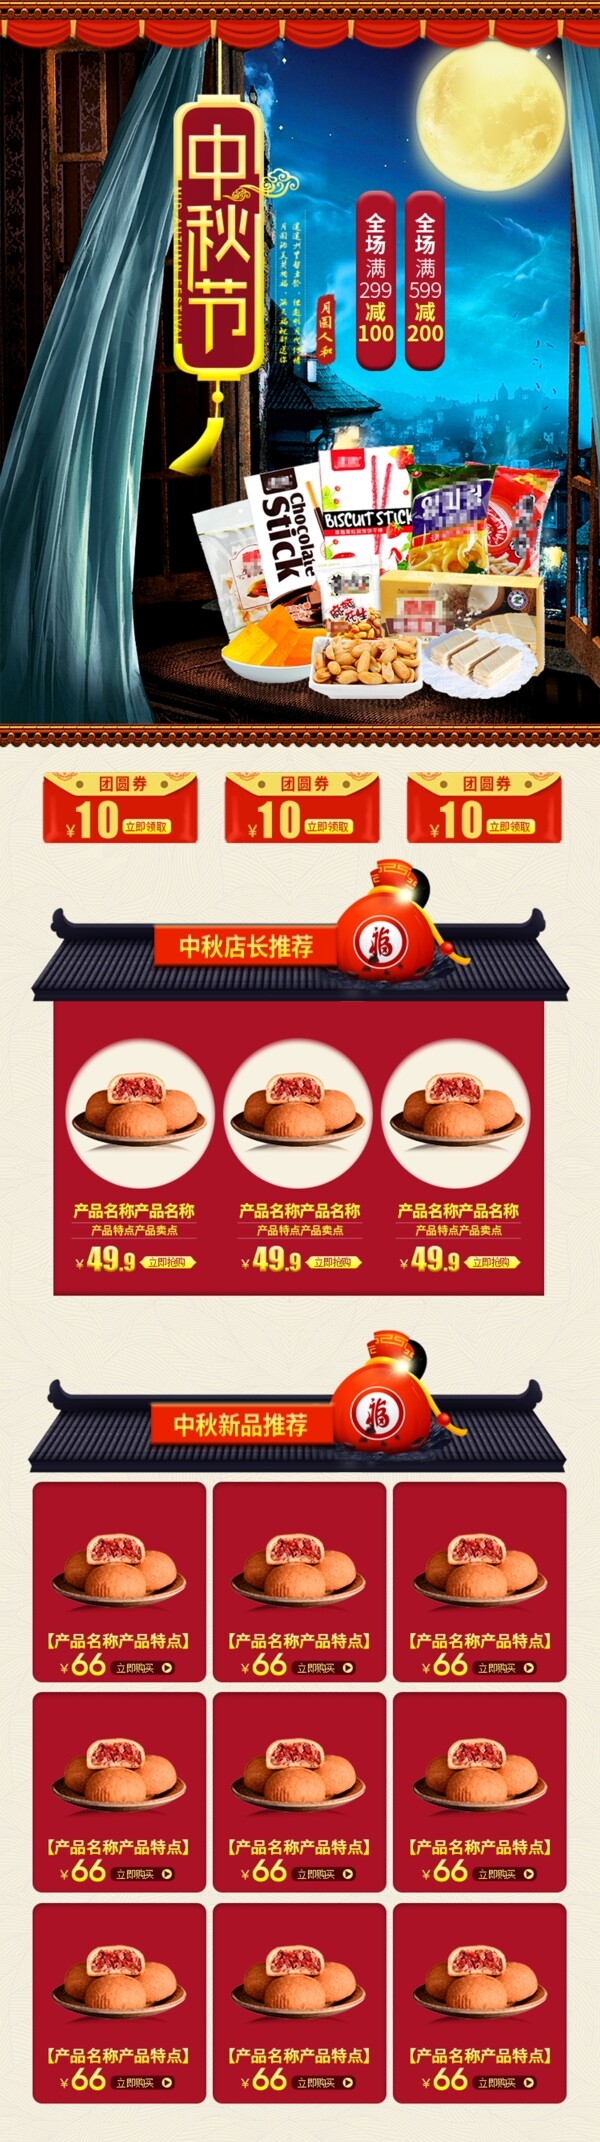 天猫淘宝中秋节促销食品中国风移动端首页